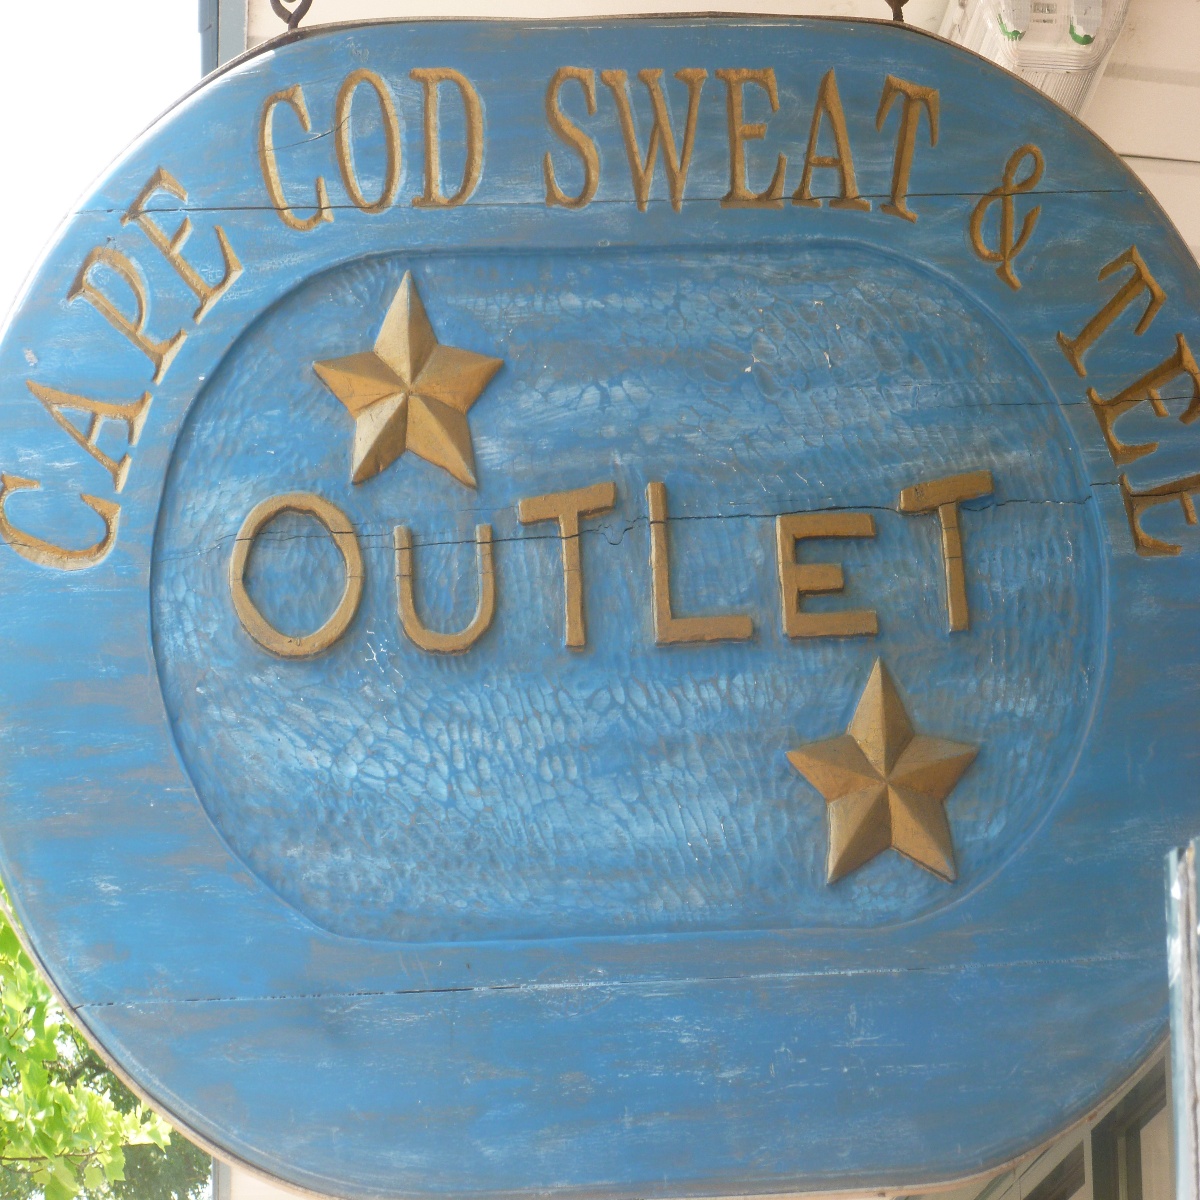 Cape Cod Sweat & Tee Outlet/Hyannis Flea Market